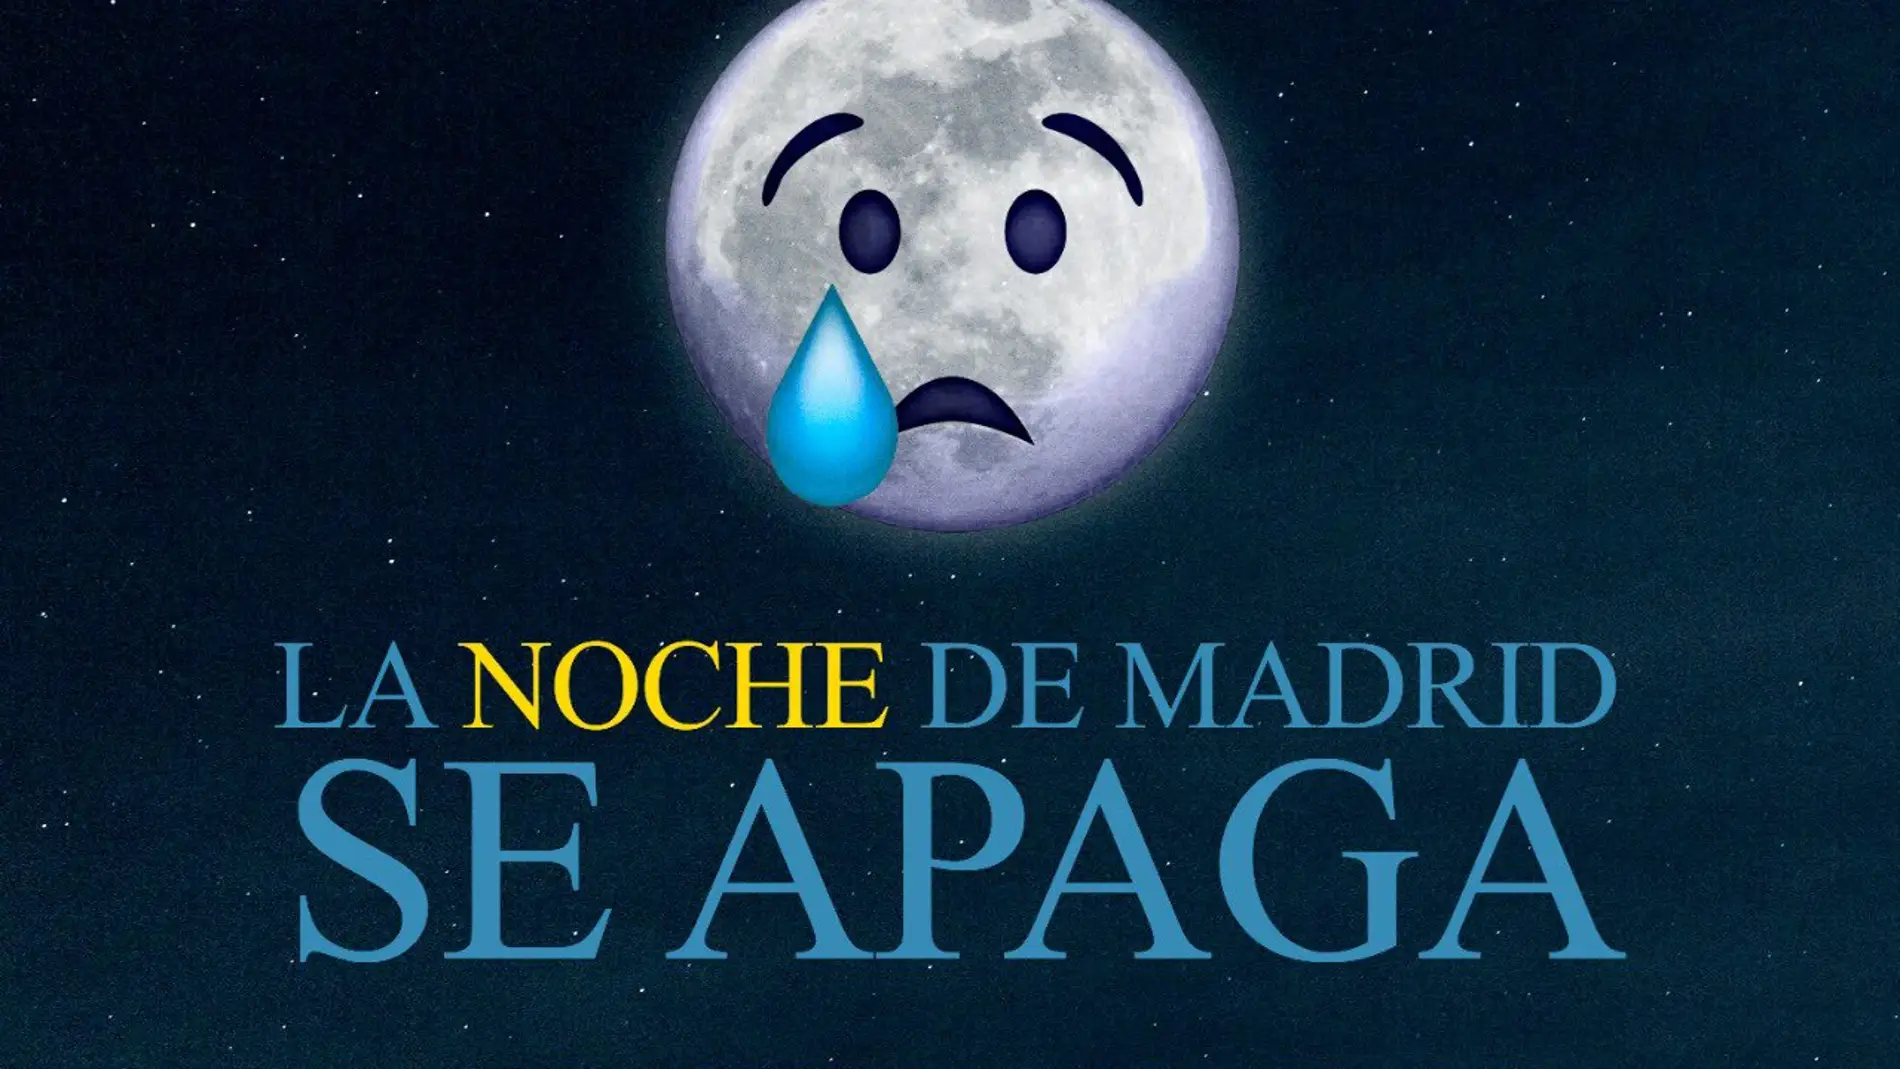 'La noche de Madrid se apaga', la campaña del ocio nocturno en protesta por las medidas contra el coronavirus